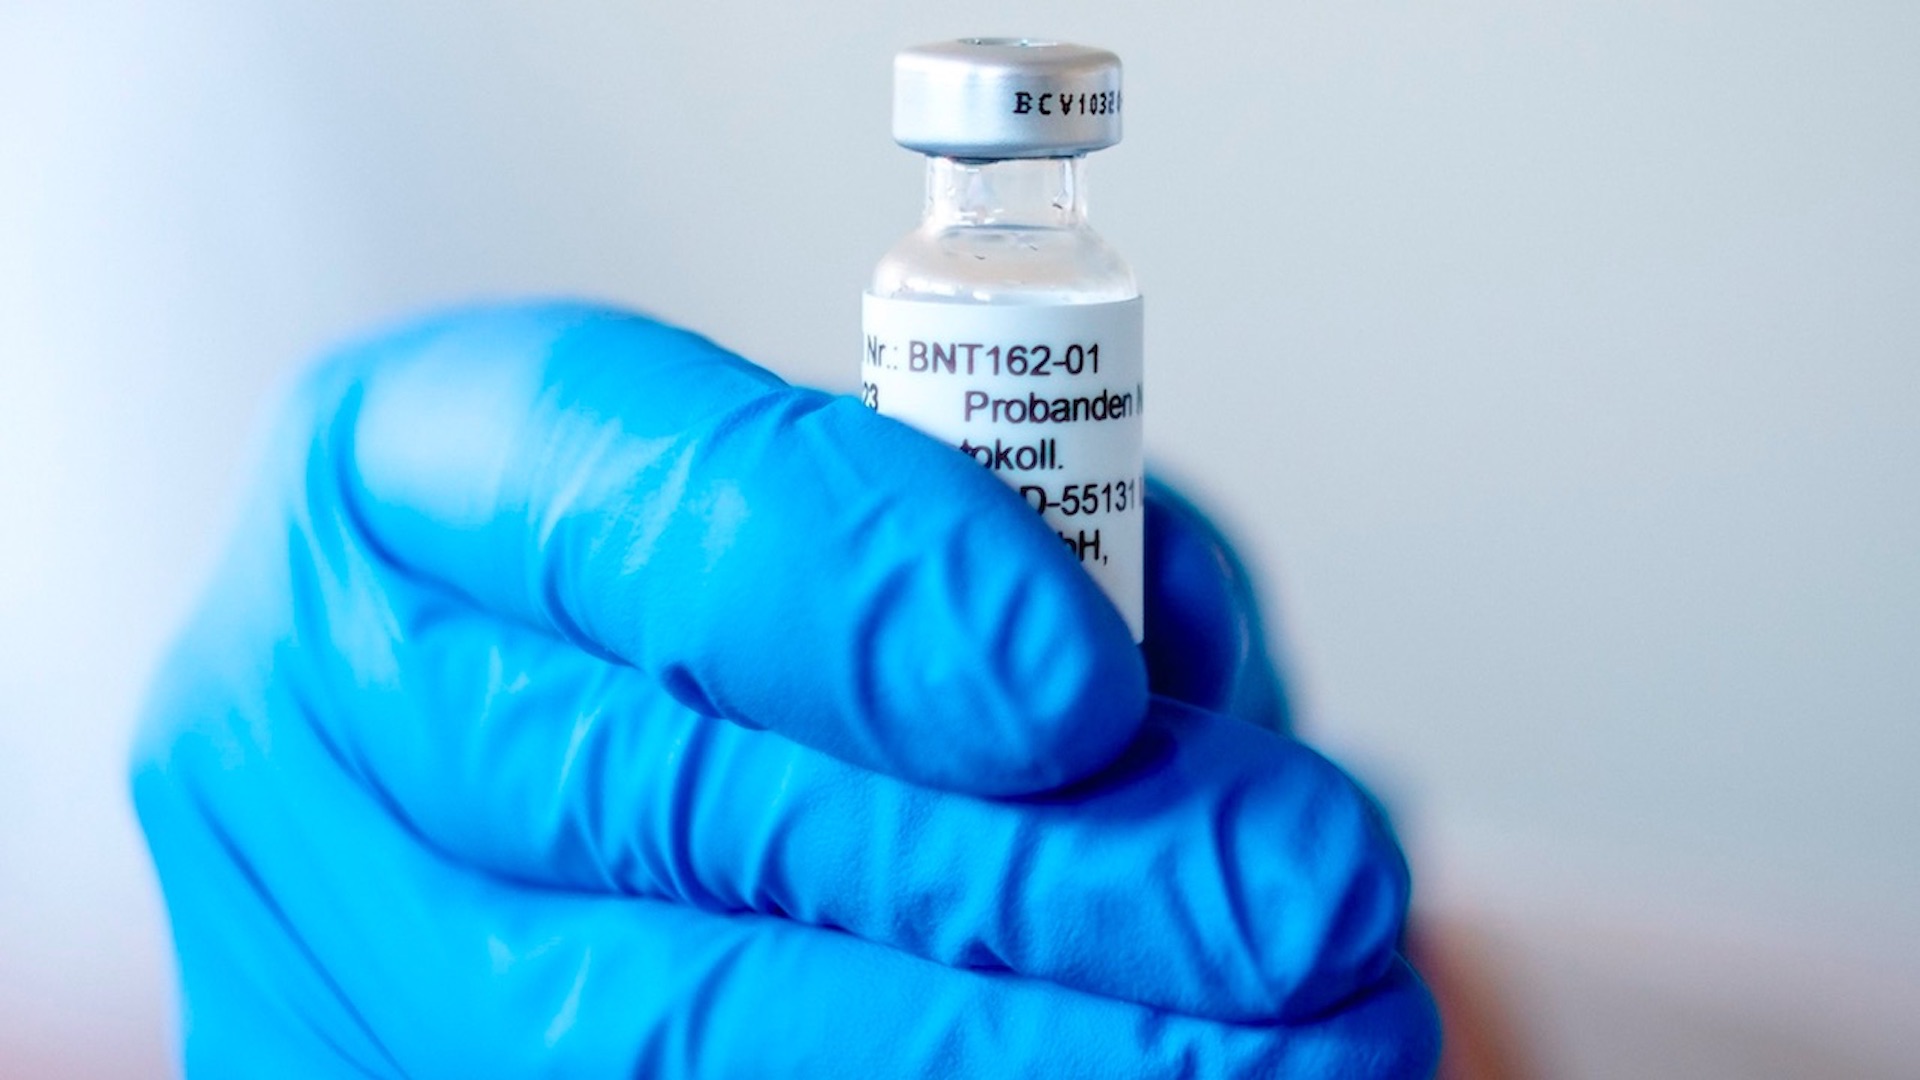 Reguladores británicos aprueban vacuna de Pfizer y BioNTech contra COVID-19